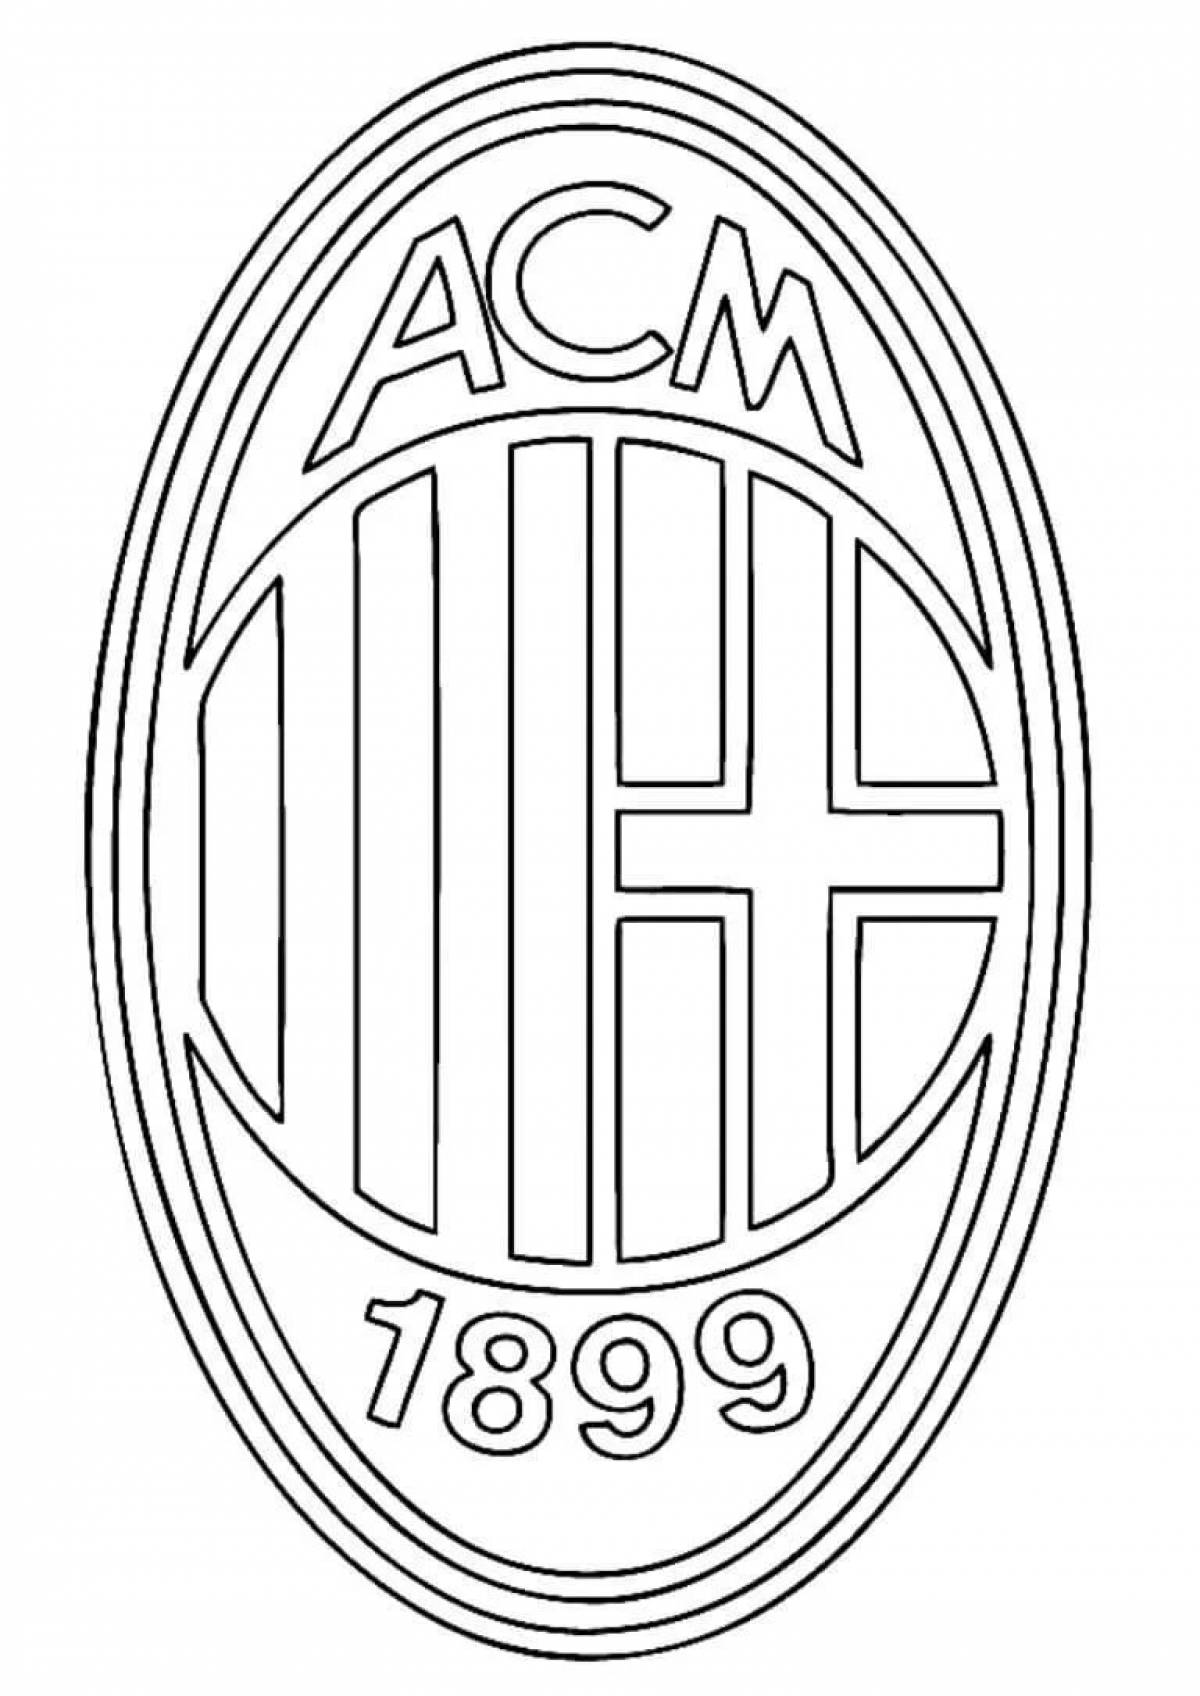 Football club logos #9